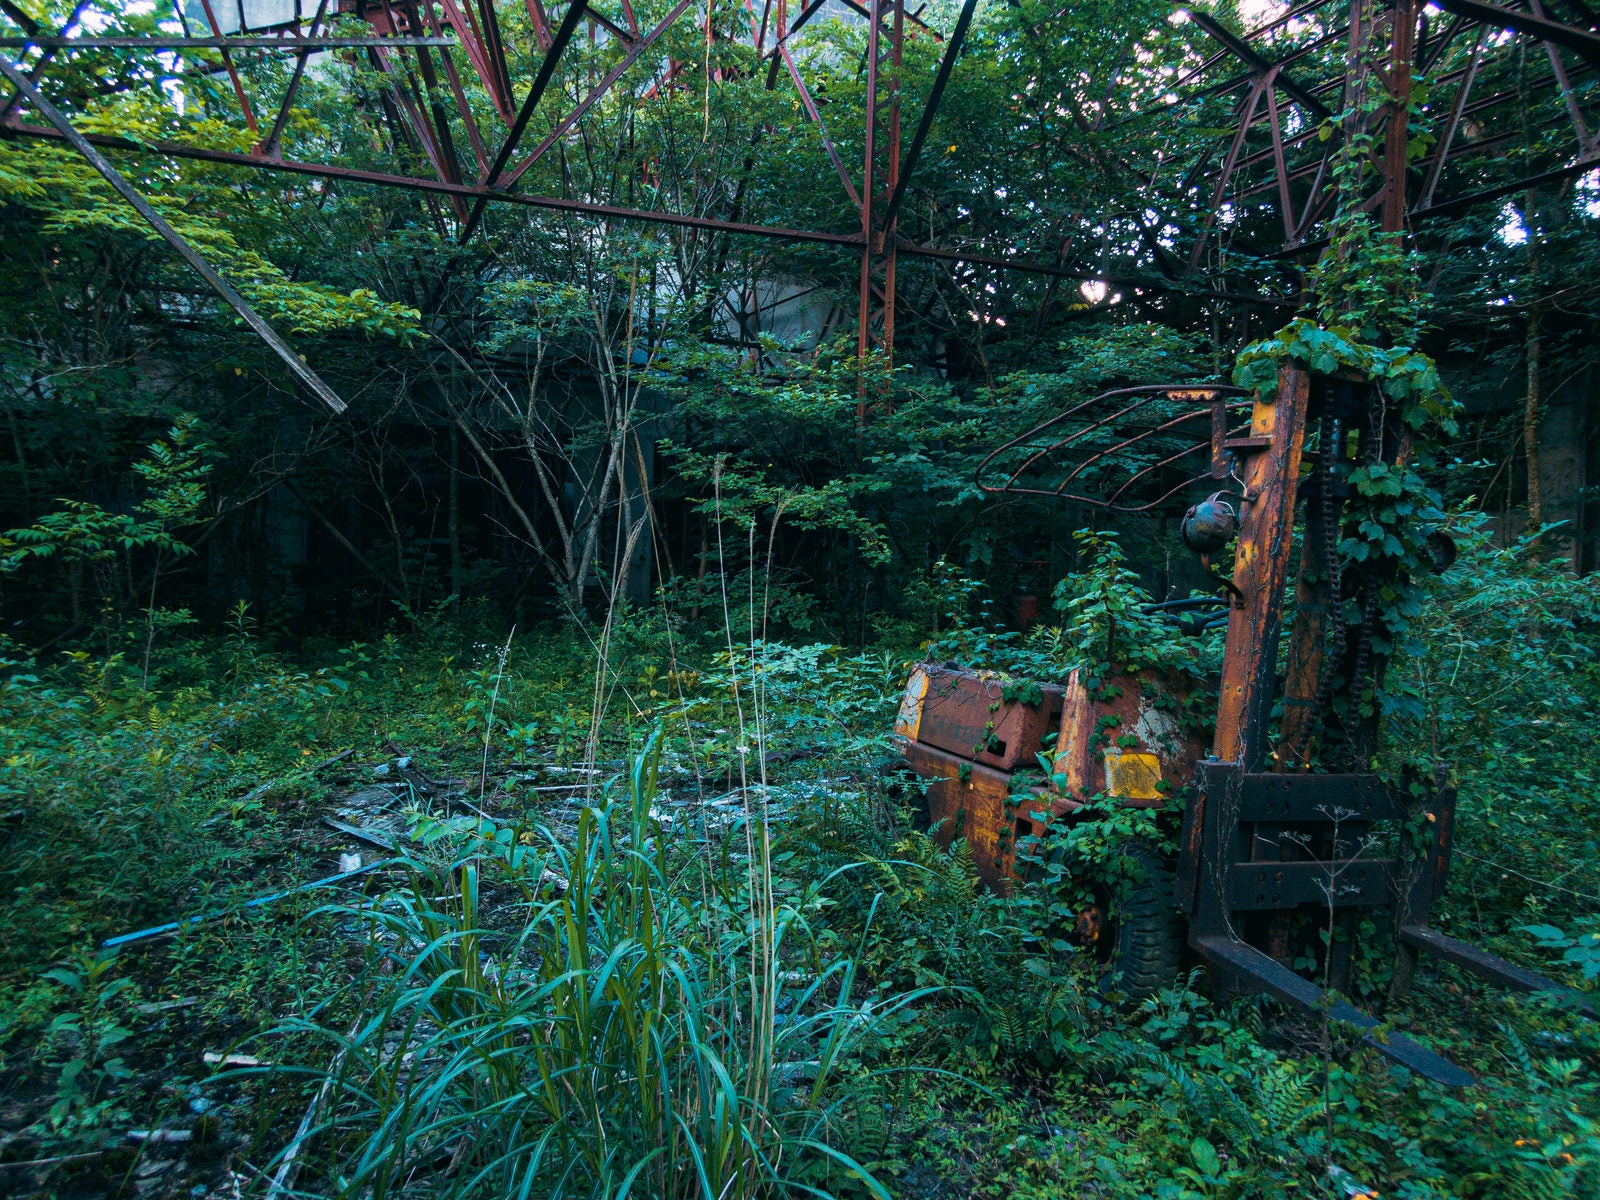 「鬱蒼と生い茂る雑草と錆び付いたフォークリフト」の写真